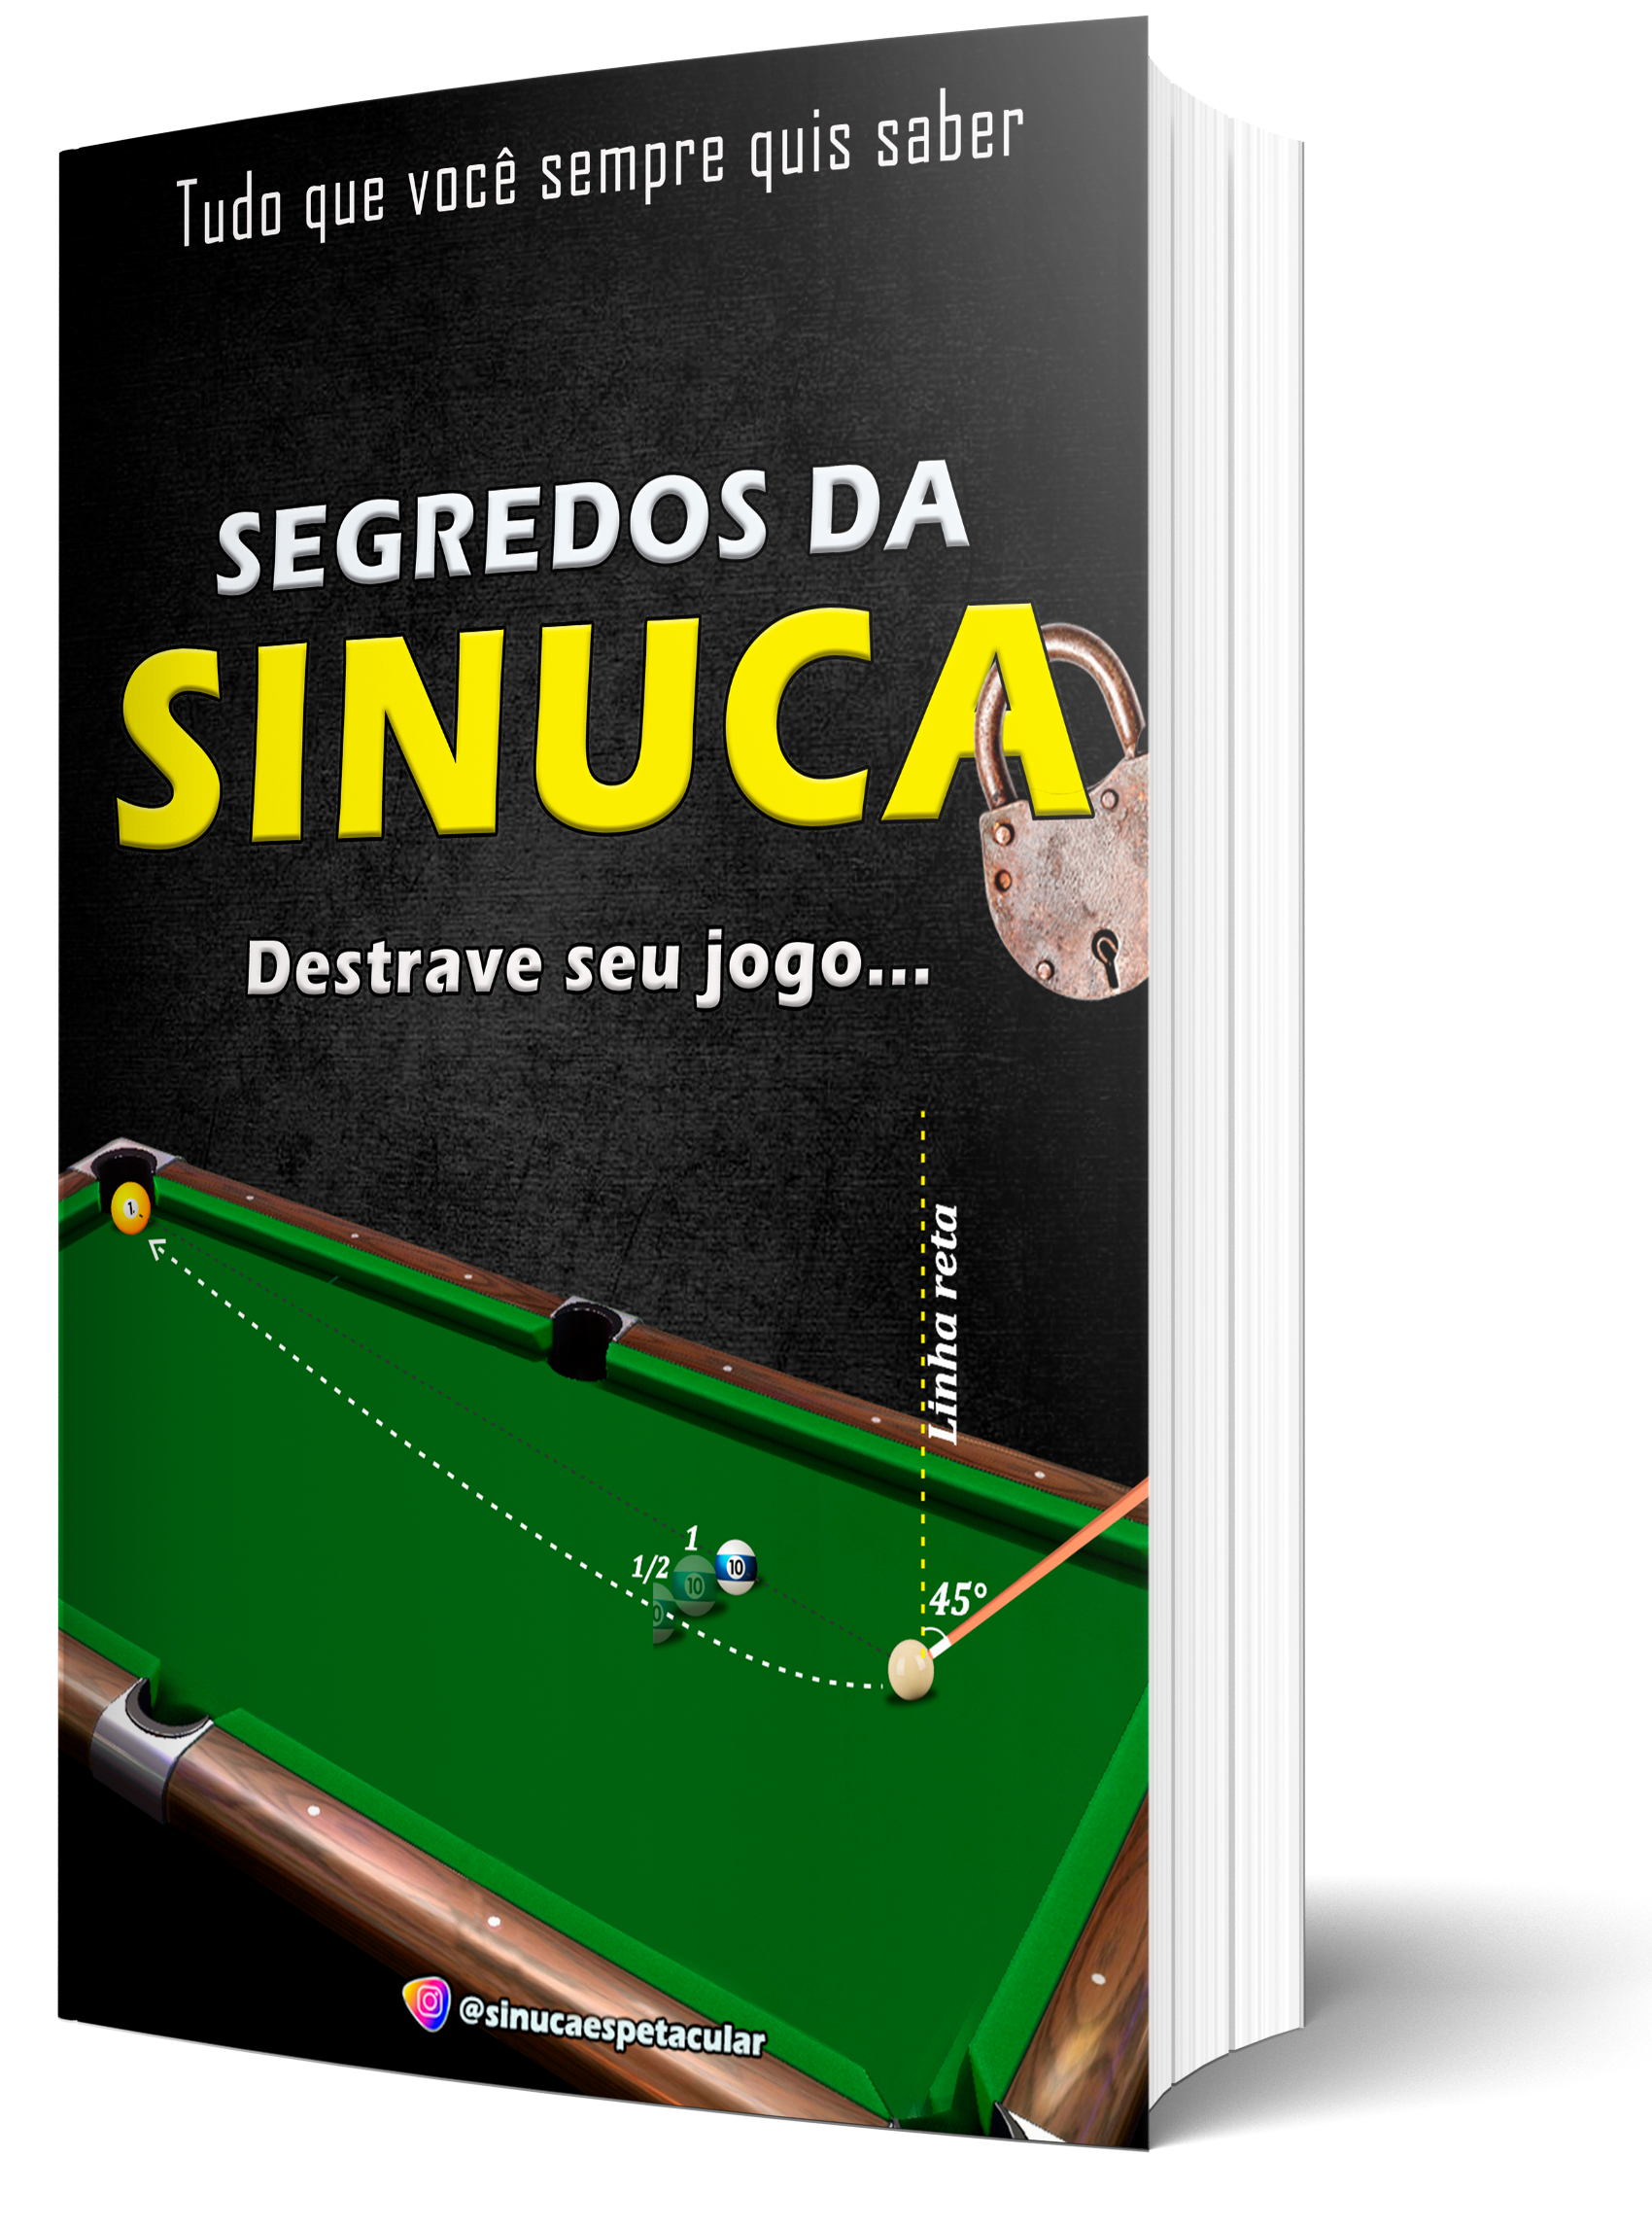 Faça download do Sinuca 3D e compre créditos online